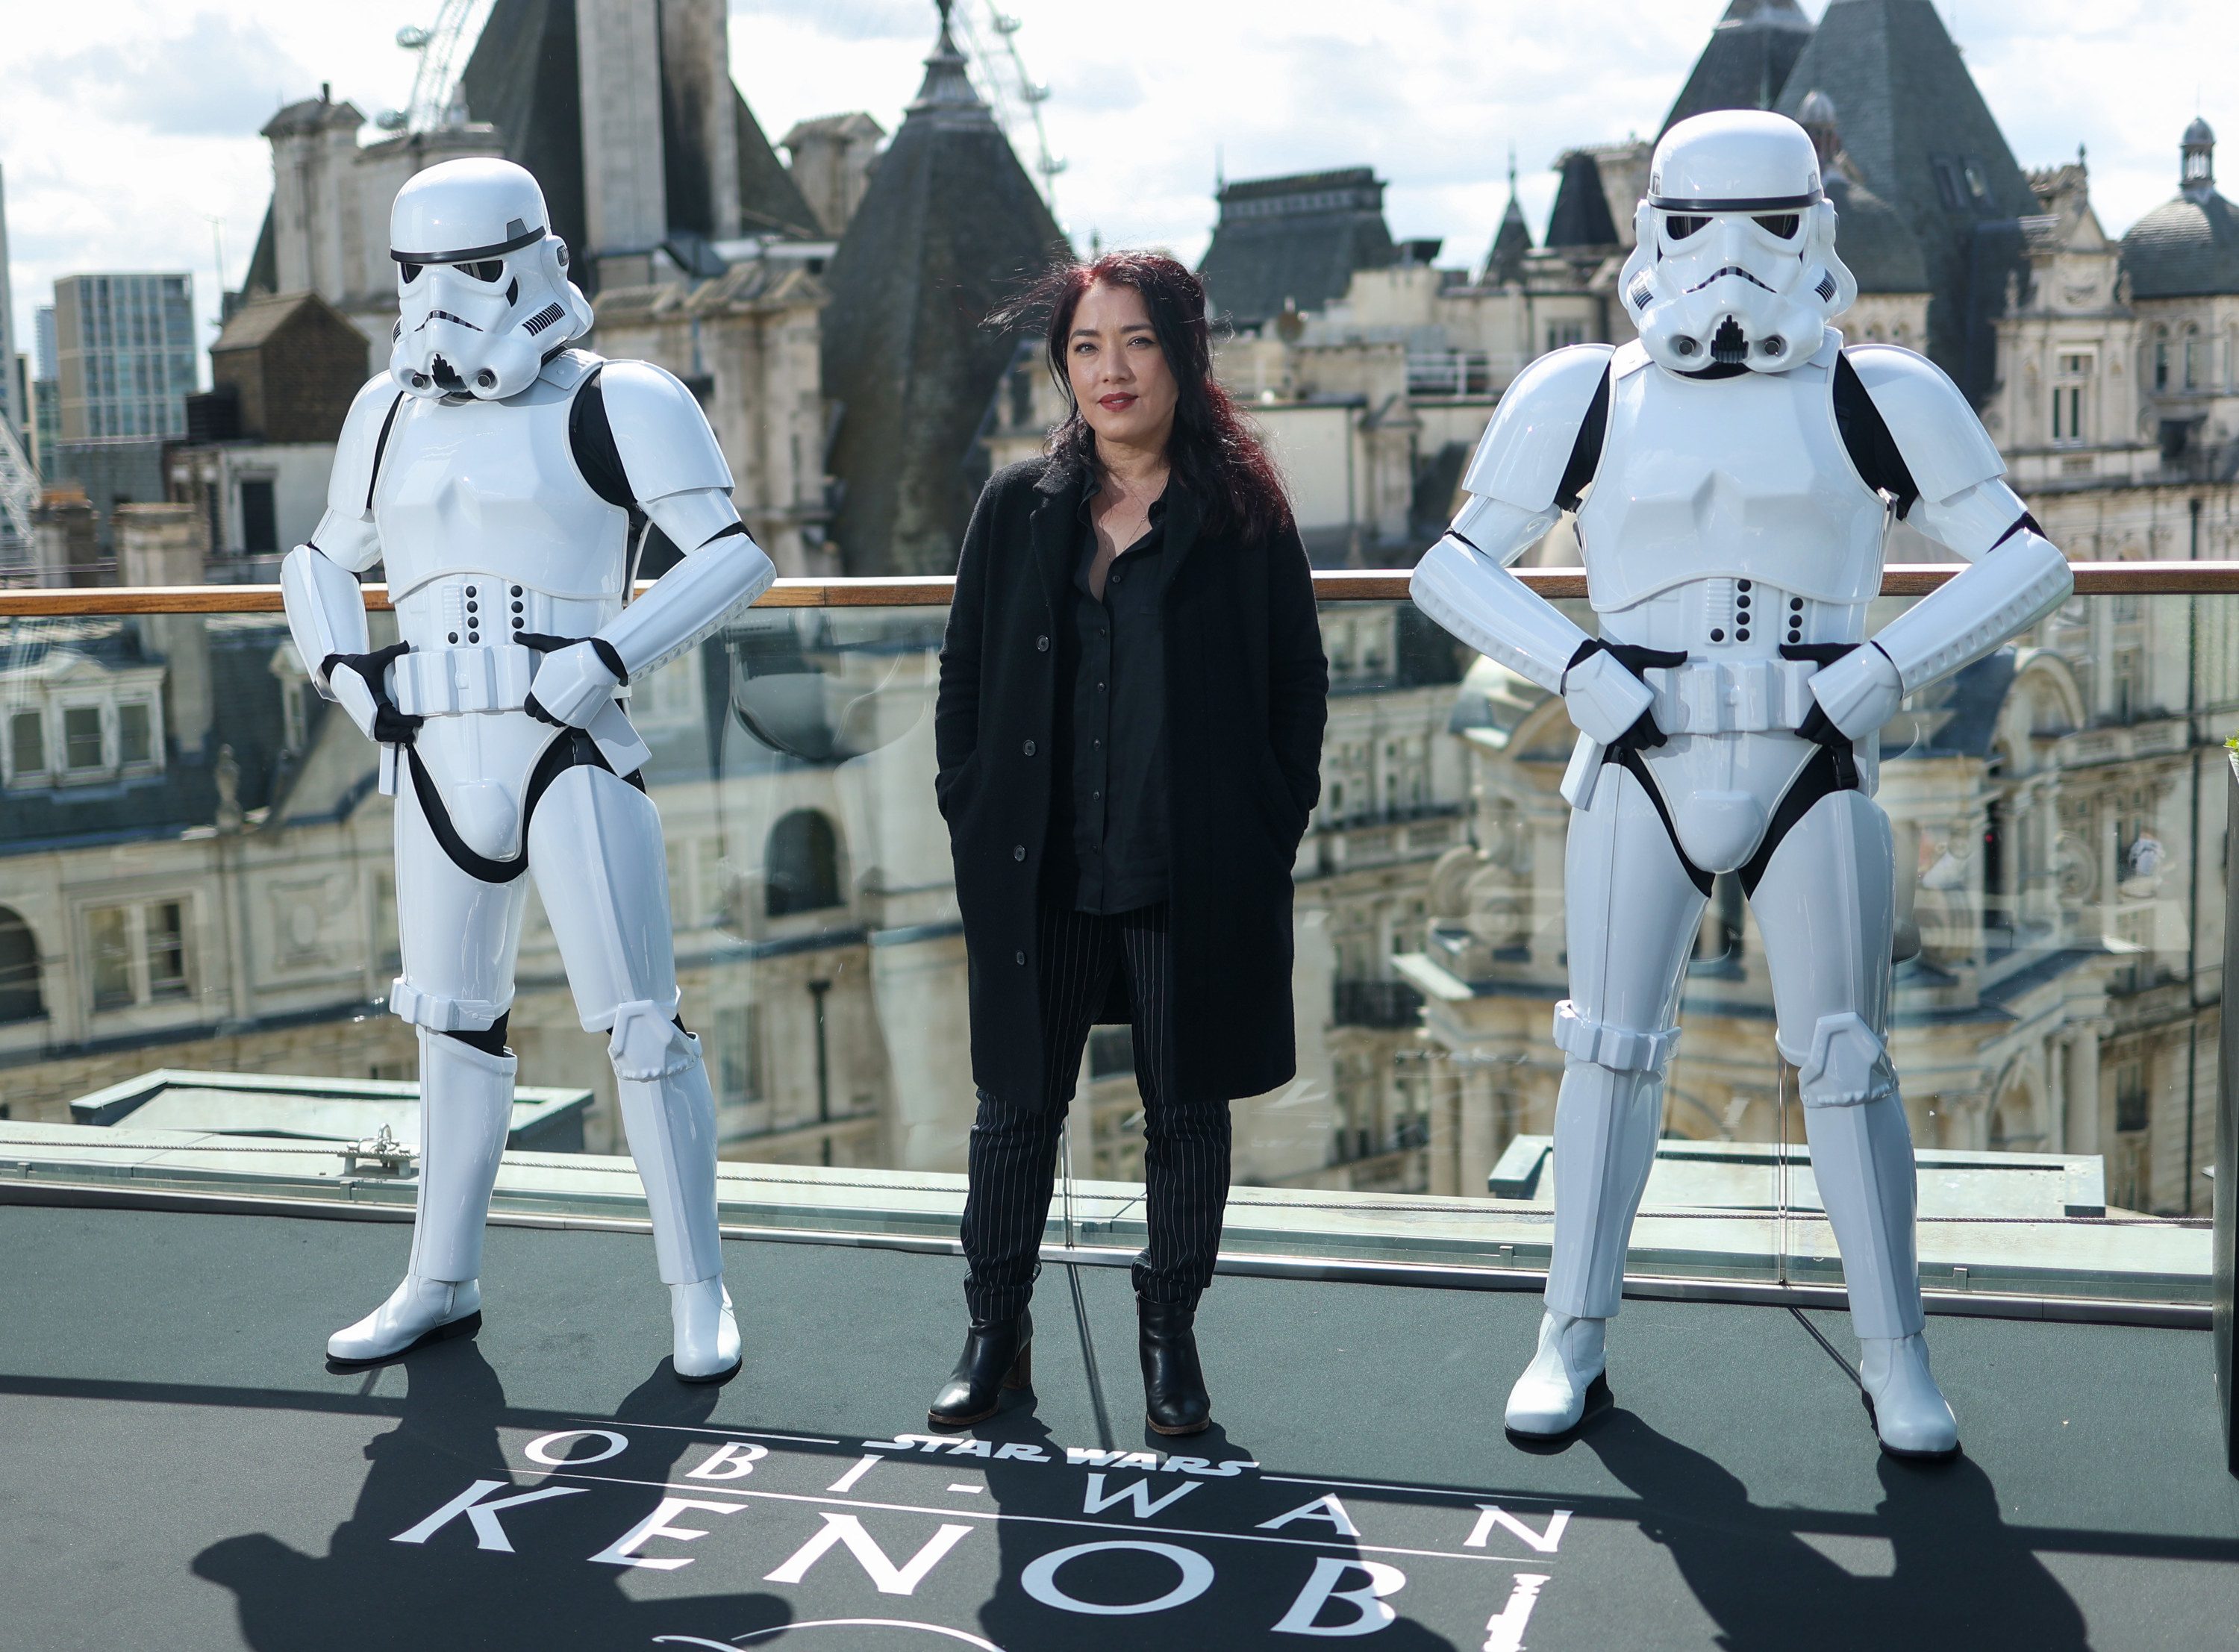 Deborah Chow and stormtroopers at Obi-Wan Kenobi event